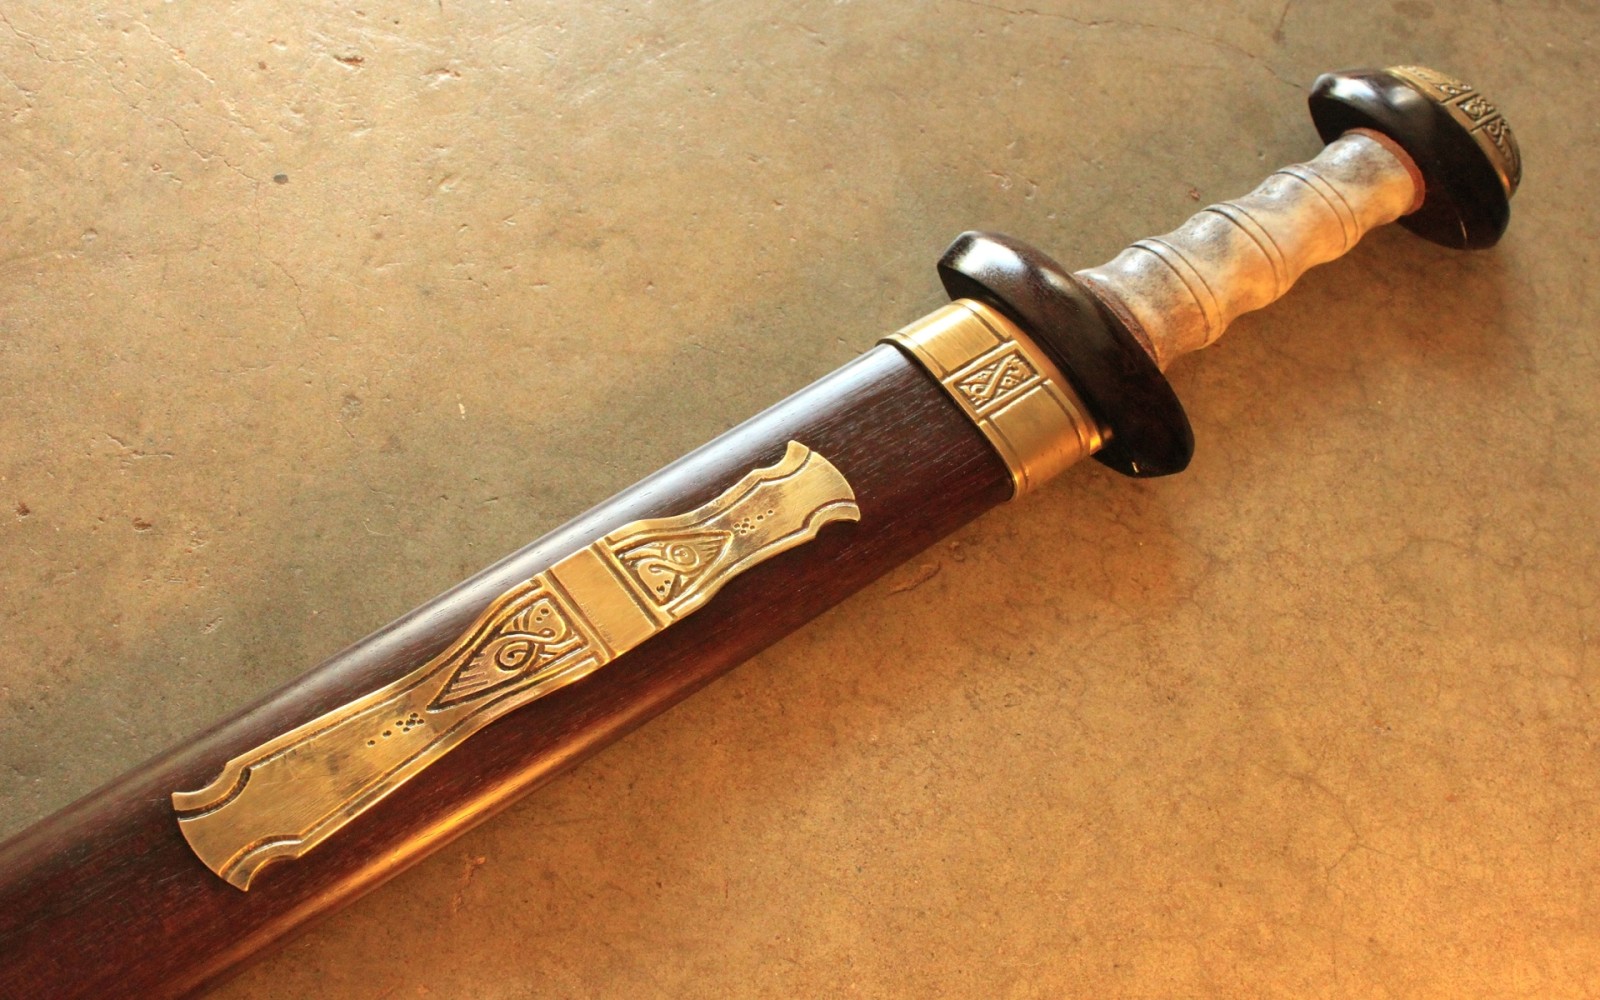 Gladius, dihiasi, pedang pendek